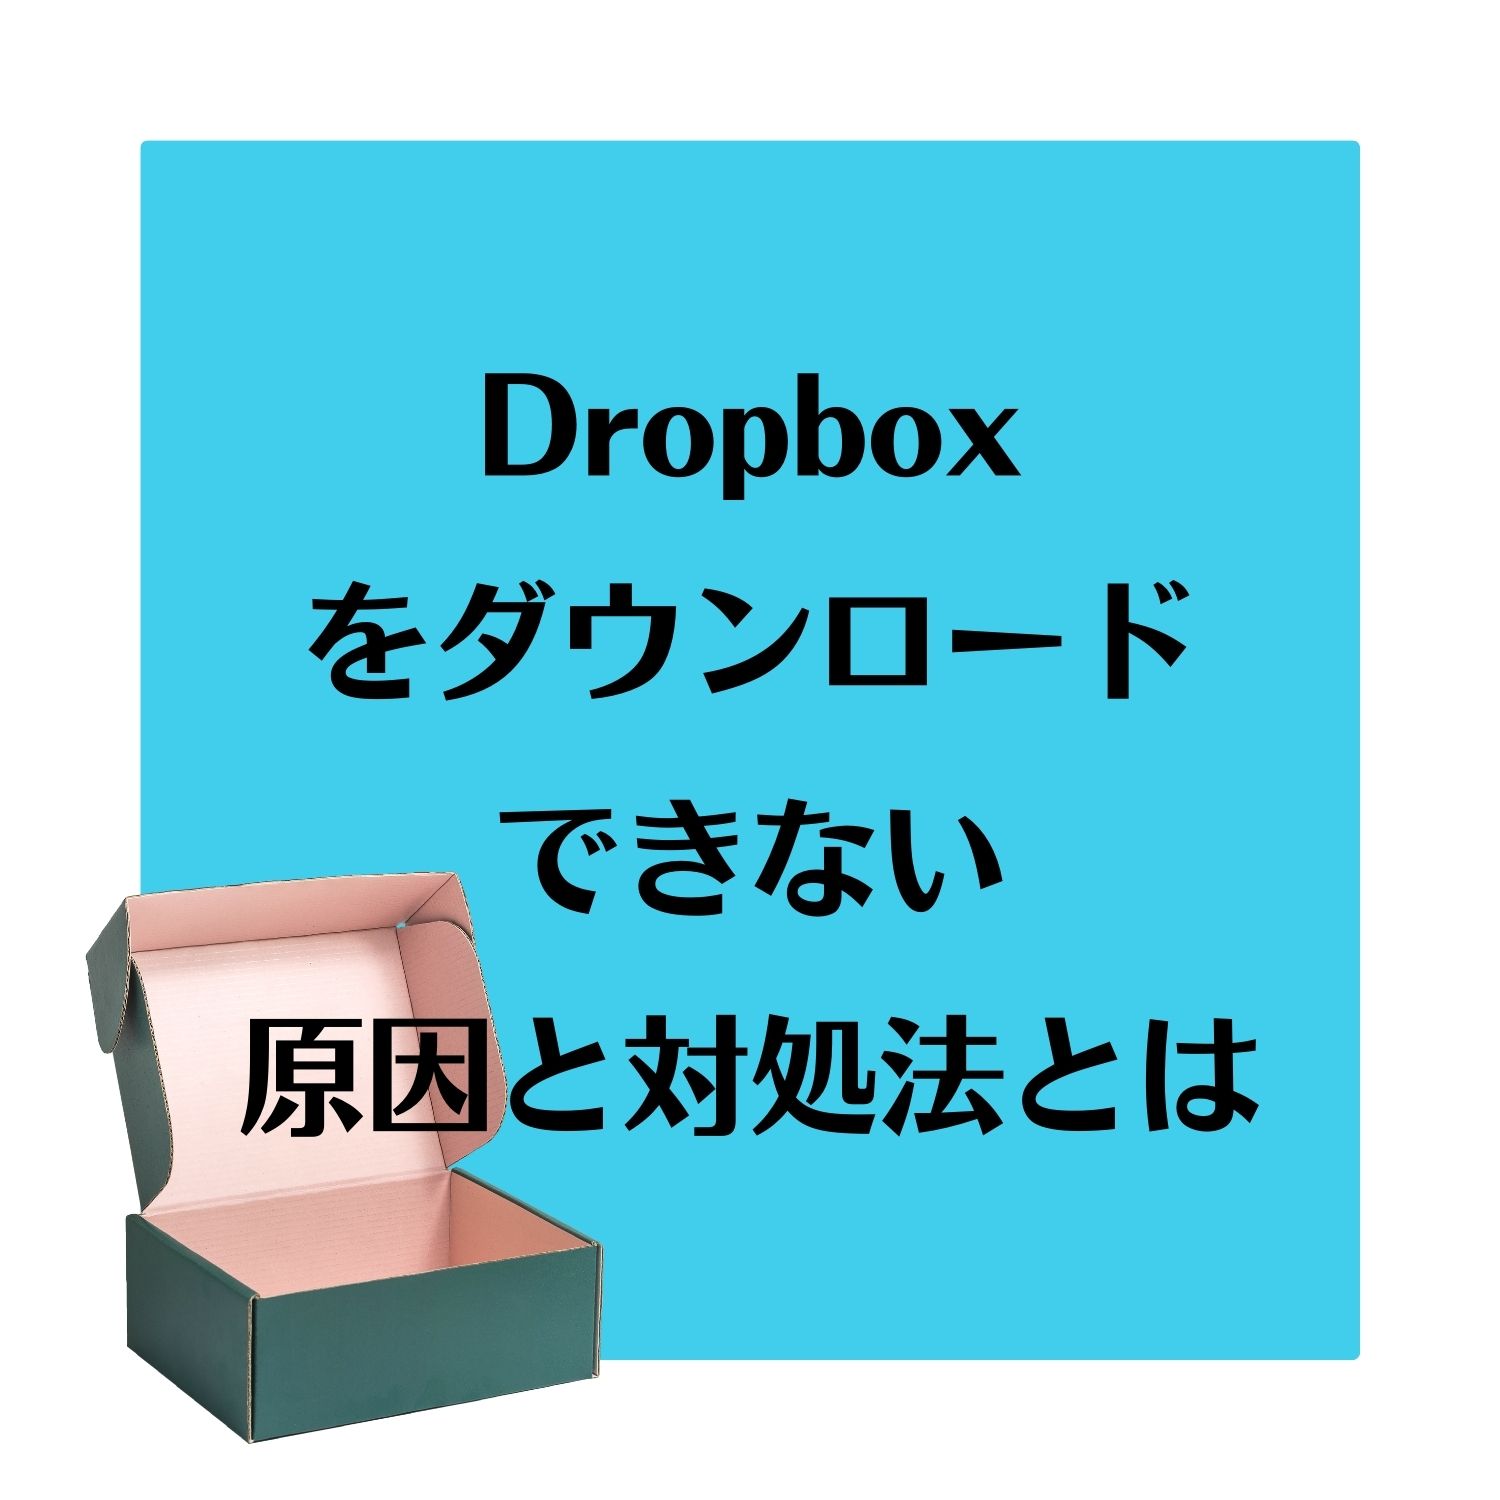 Dropboxをダウンロードできない原因と対処法とは #Dropbox